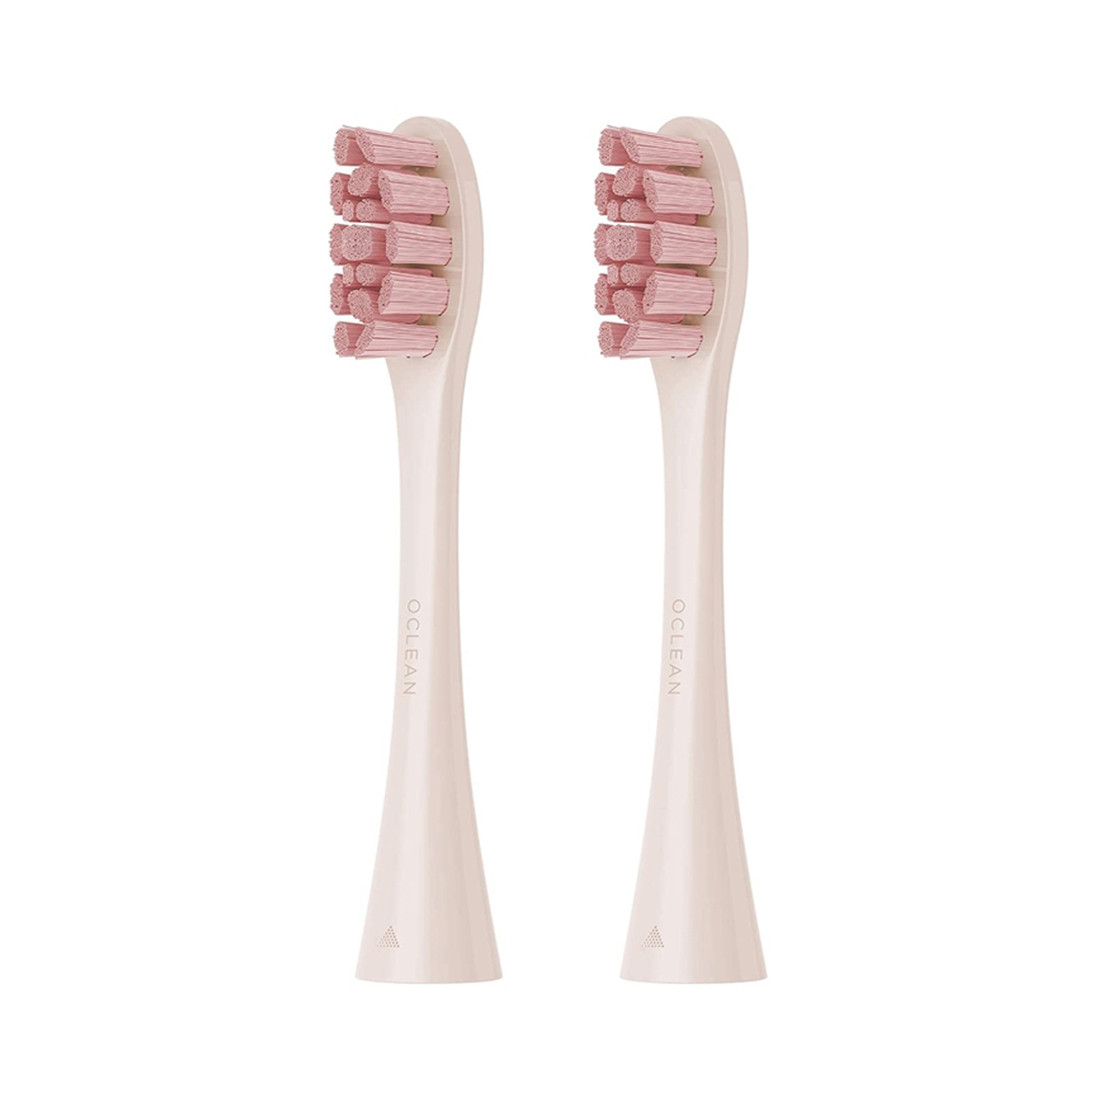 Сменные зубные щетки PW03 Pink для Oclean Z1 и Oclean X Pro, фото 1